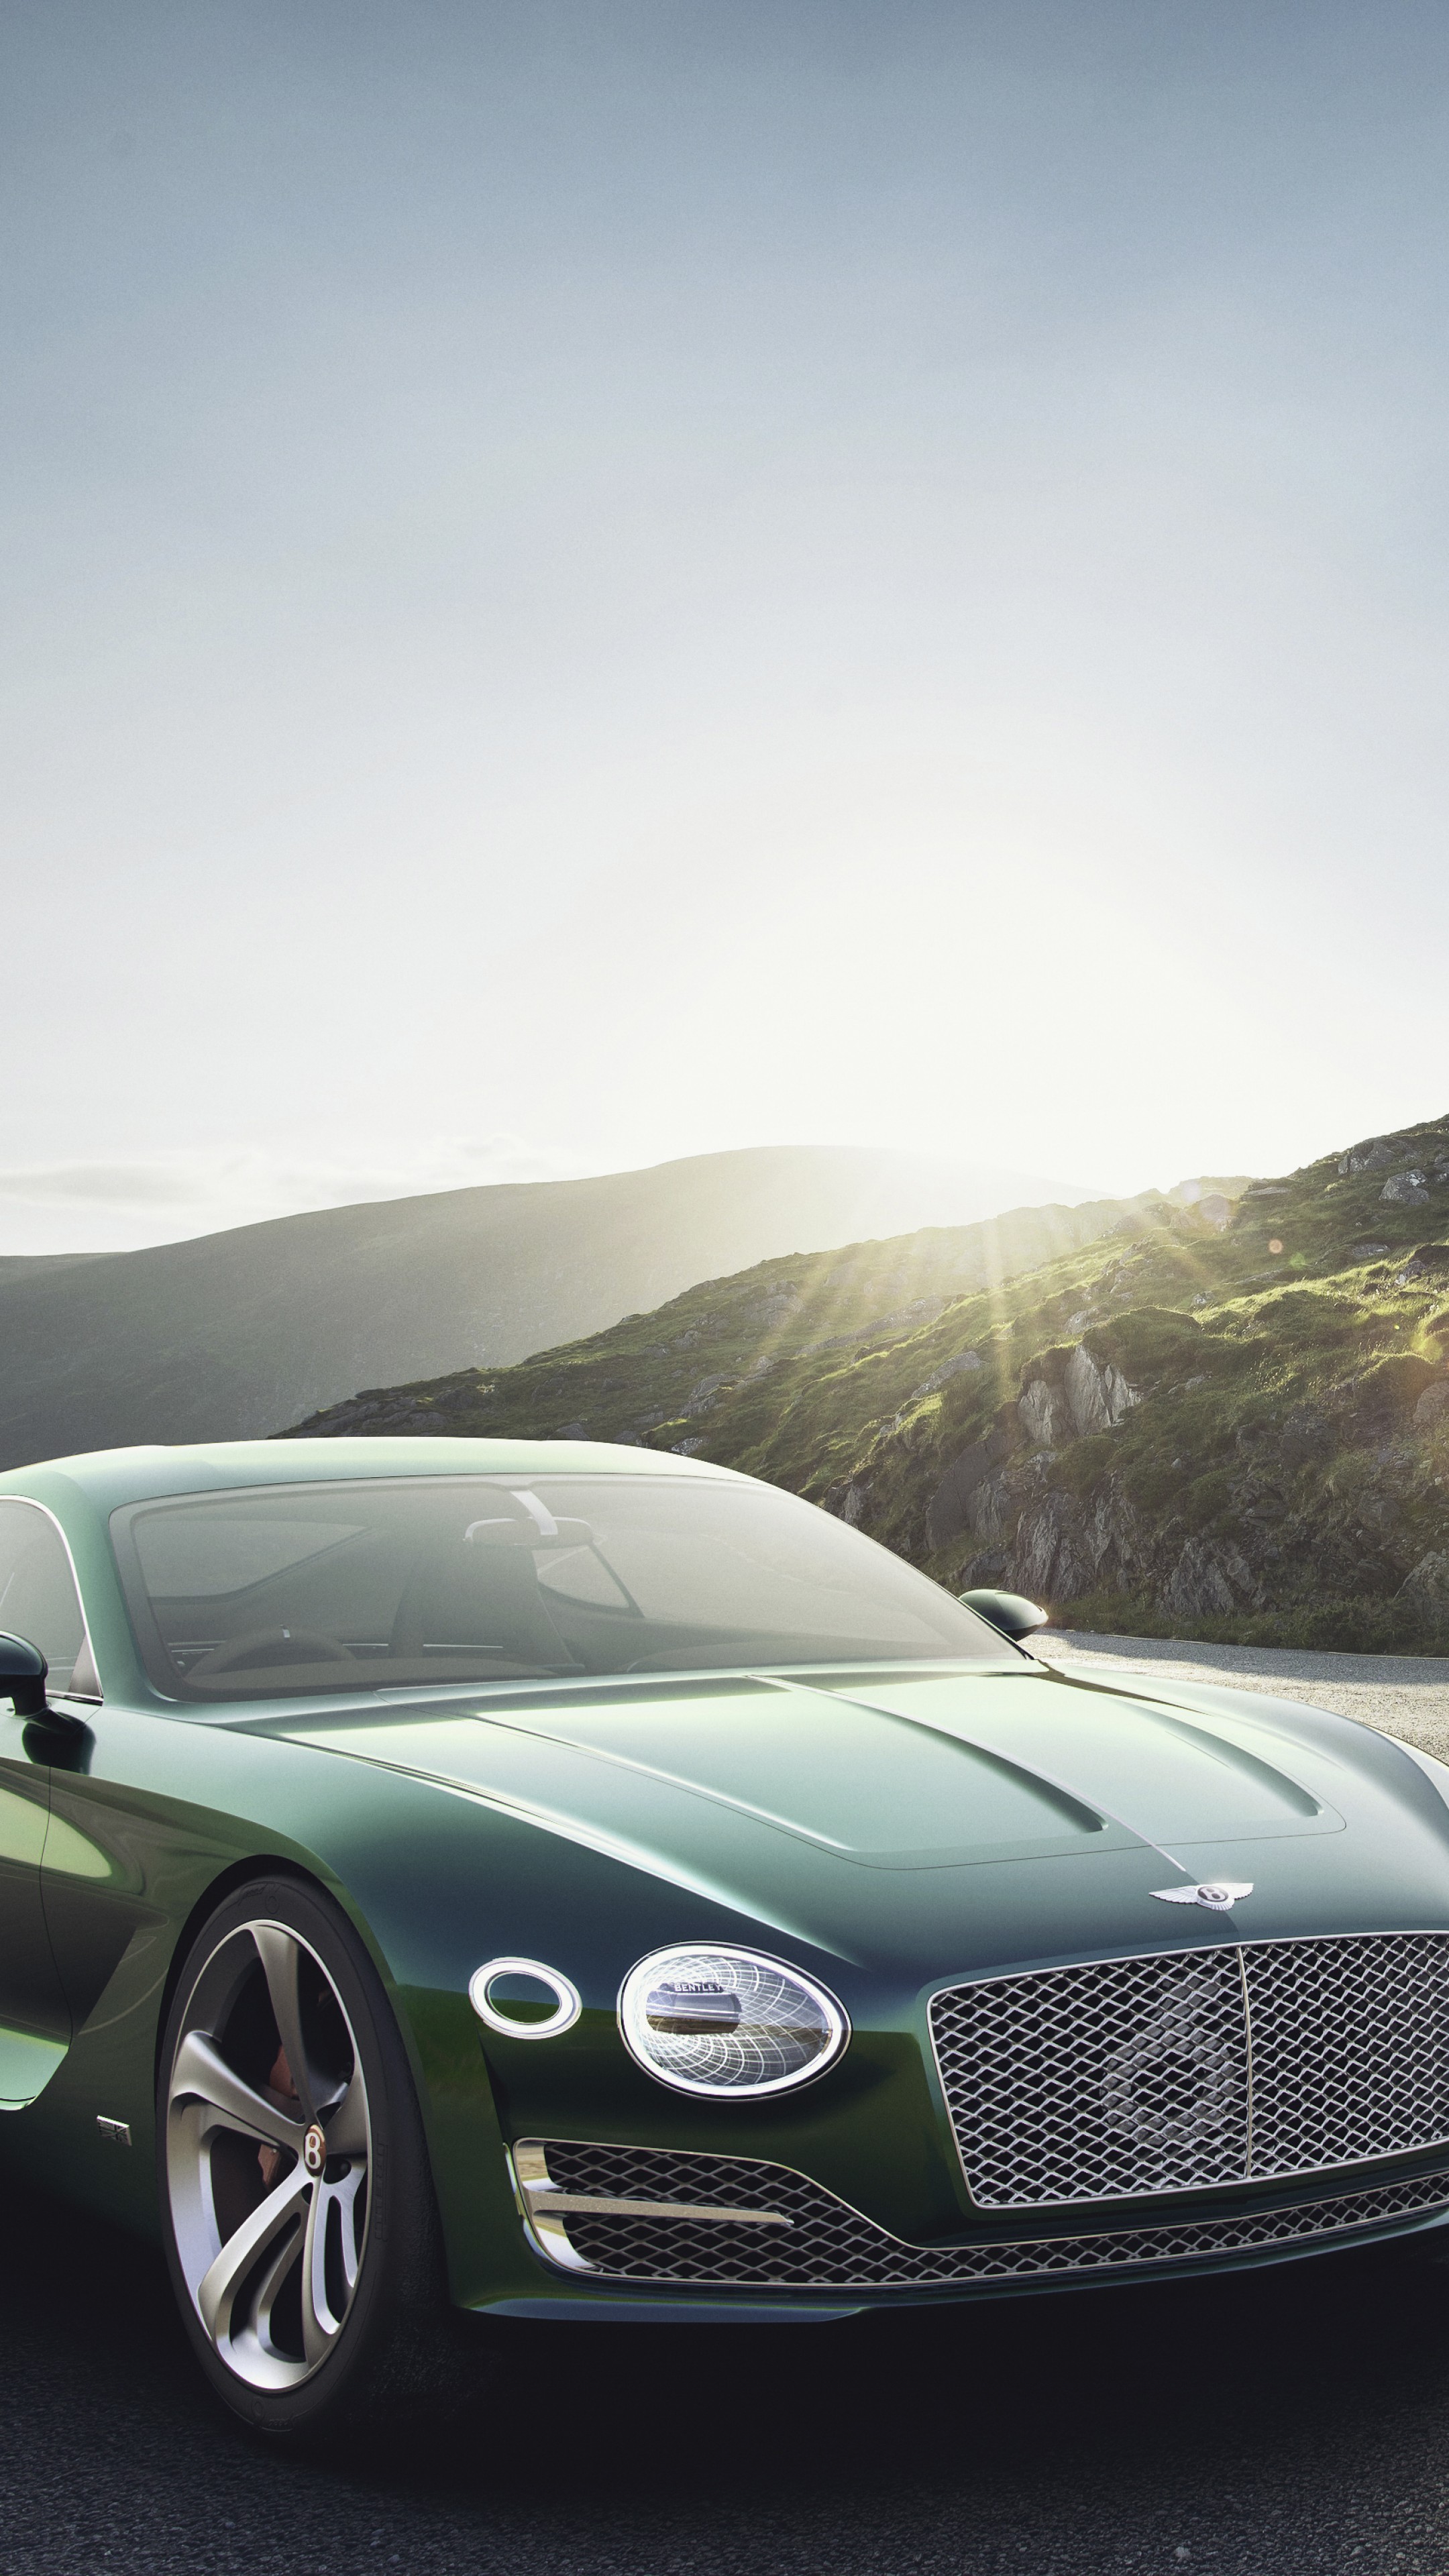 Bentley Exp 10 Speed 6 Wallpapers